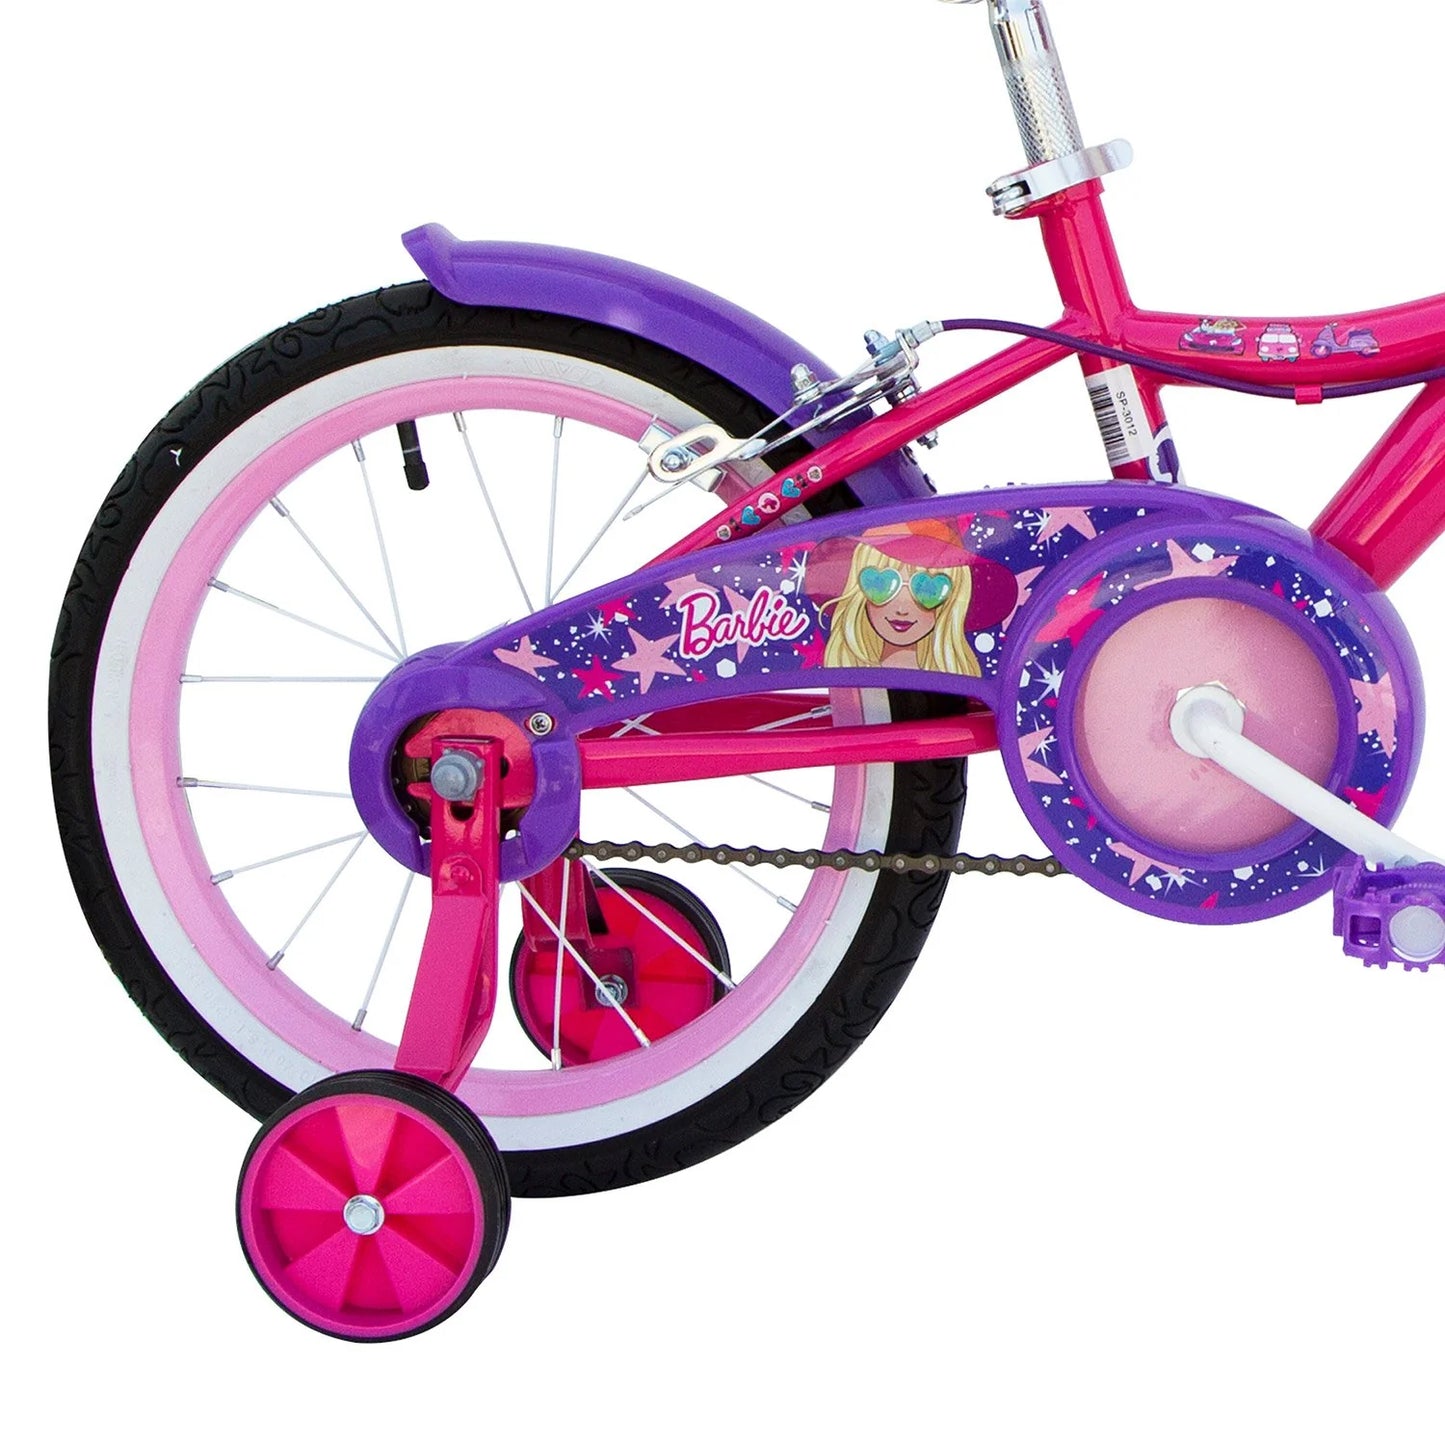 Spartan Barbie Bicycle Pink 16 inch